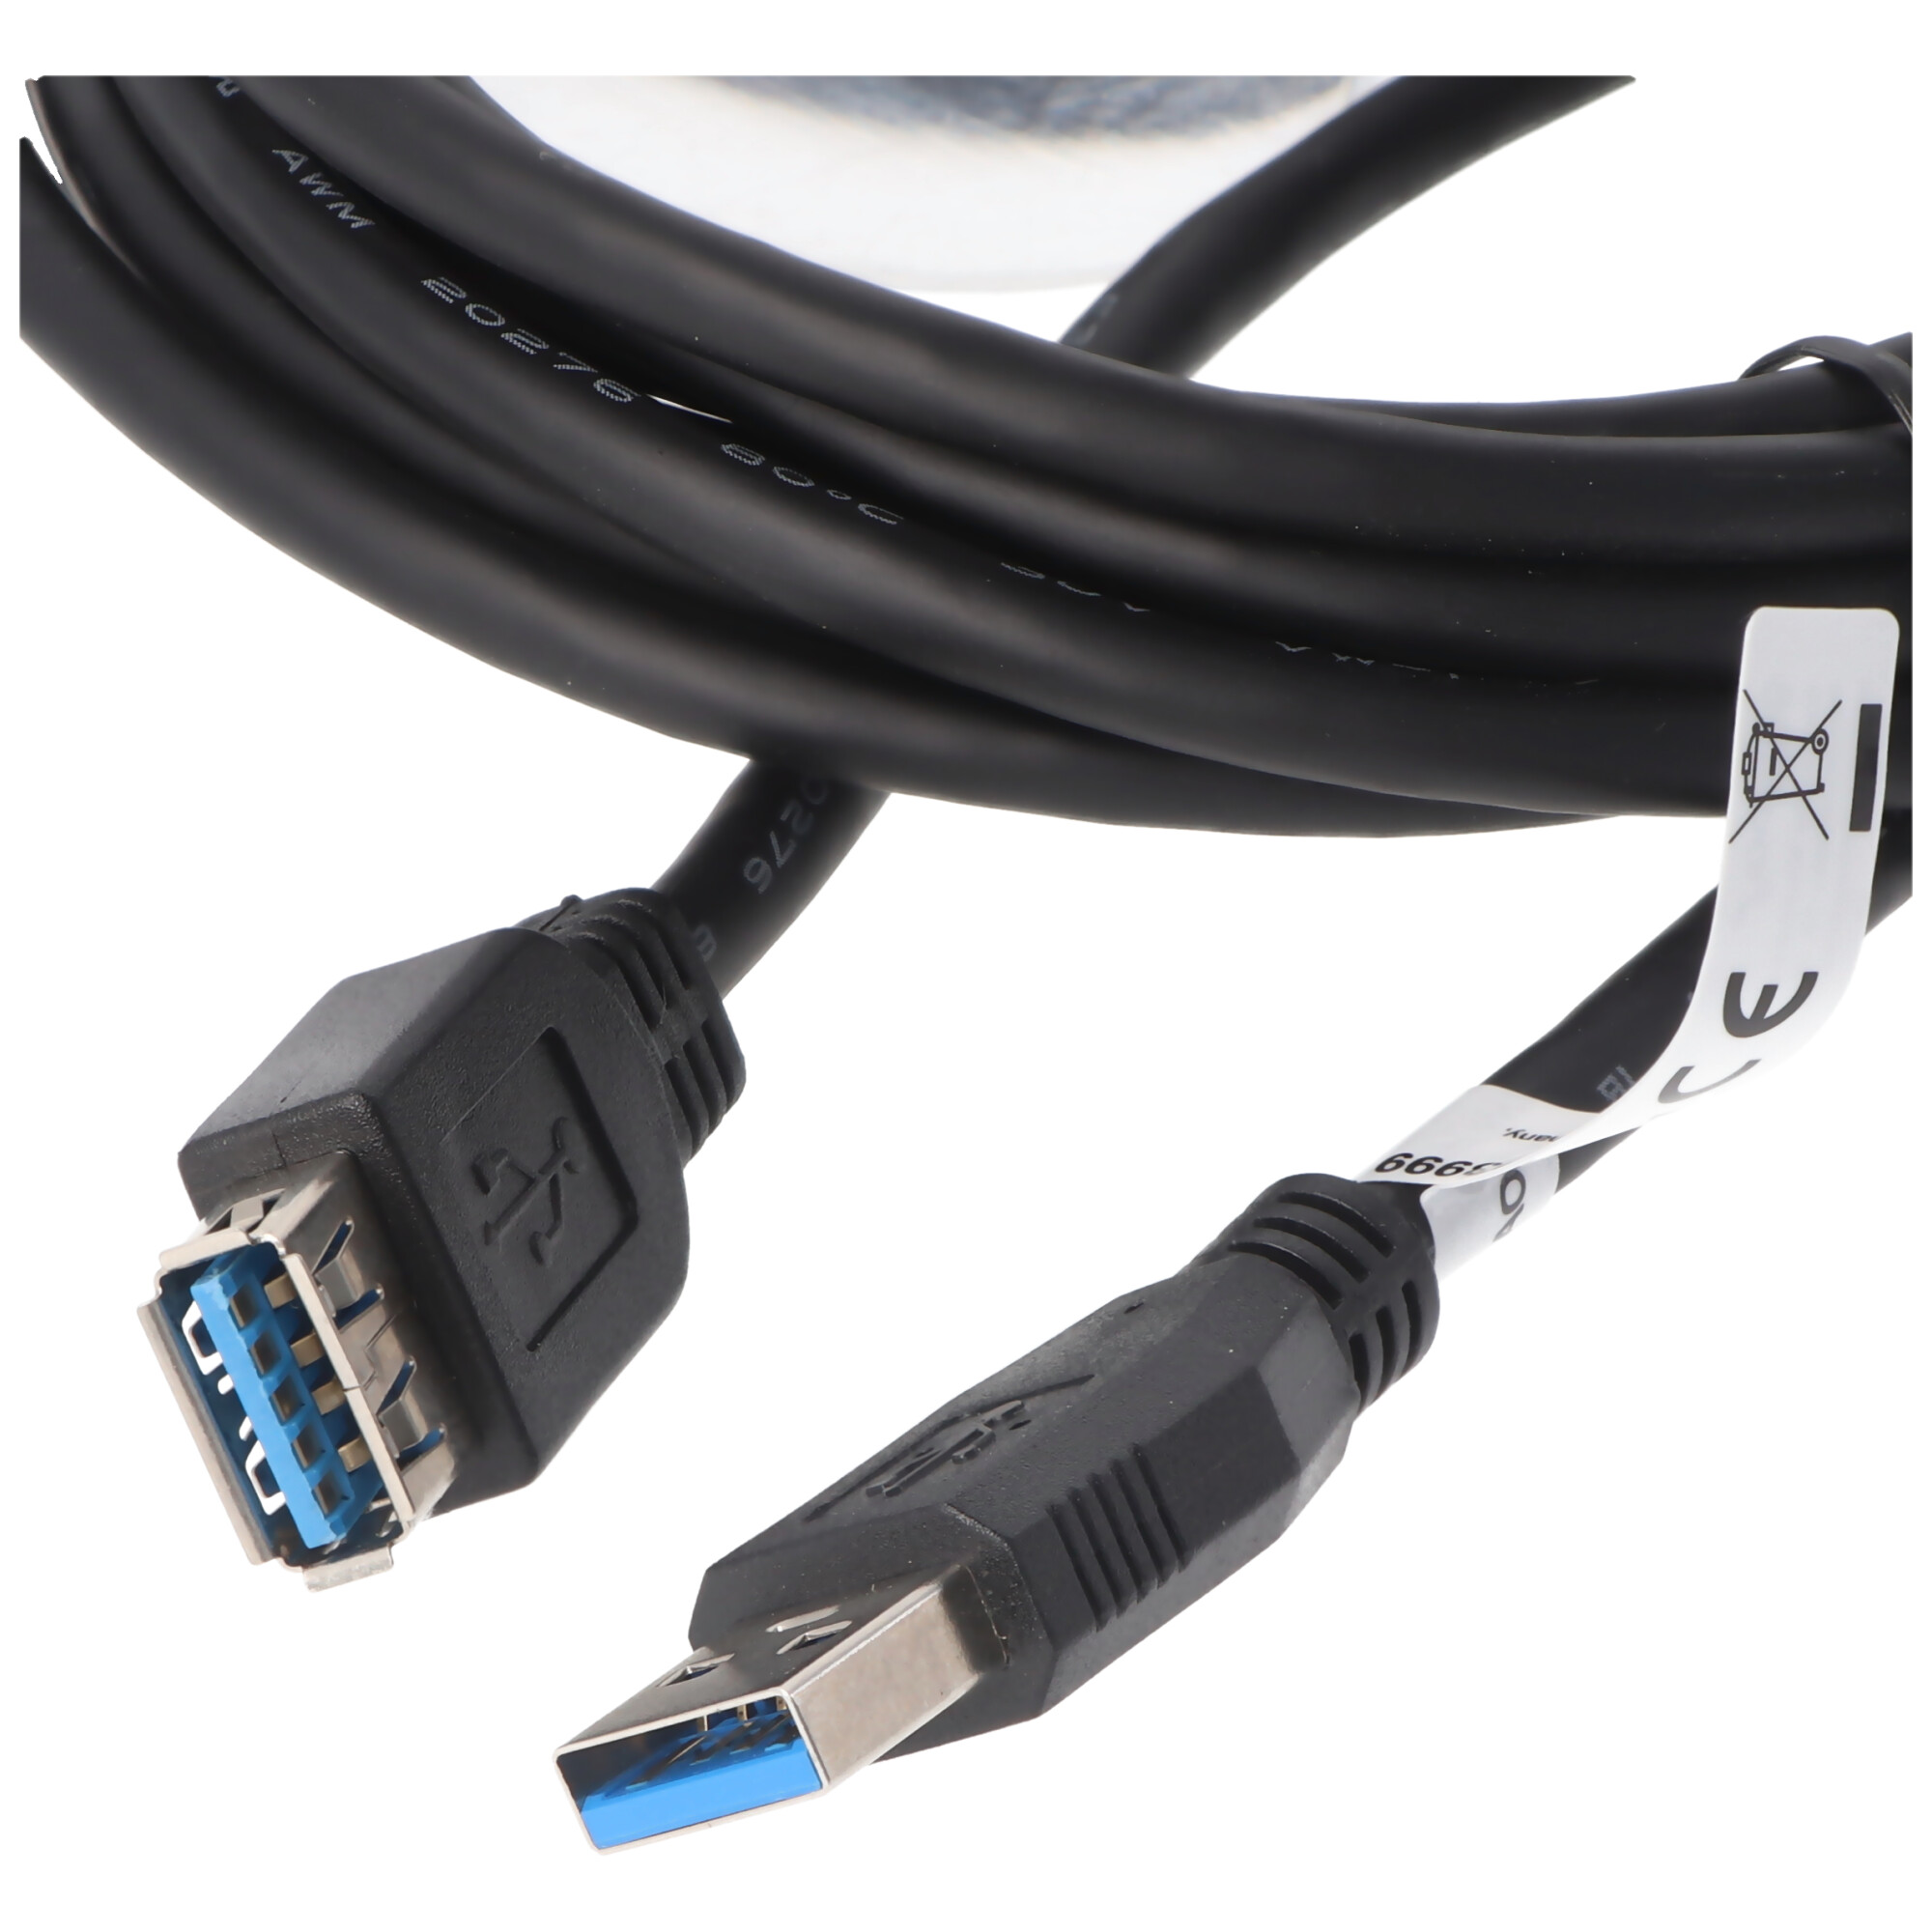 USB 3.0 SuperSpeed Verlängerungskabel Schwarz Gesamtlänge 3 Meter deutlich schneller als USB 2.0